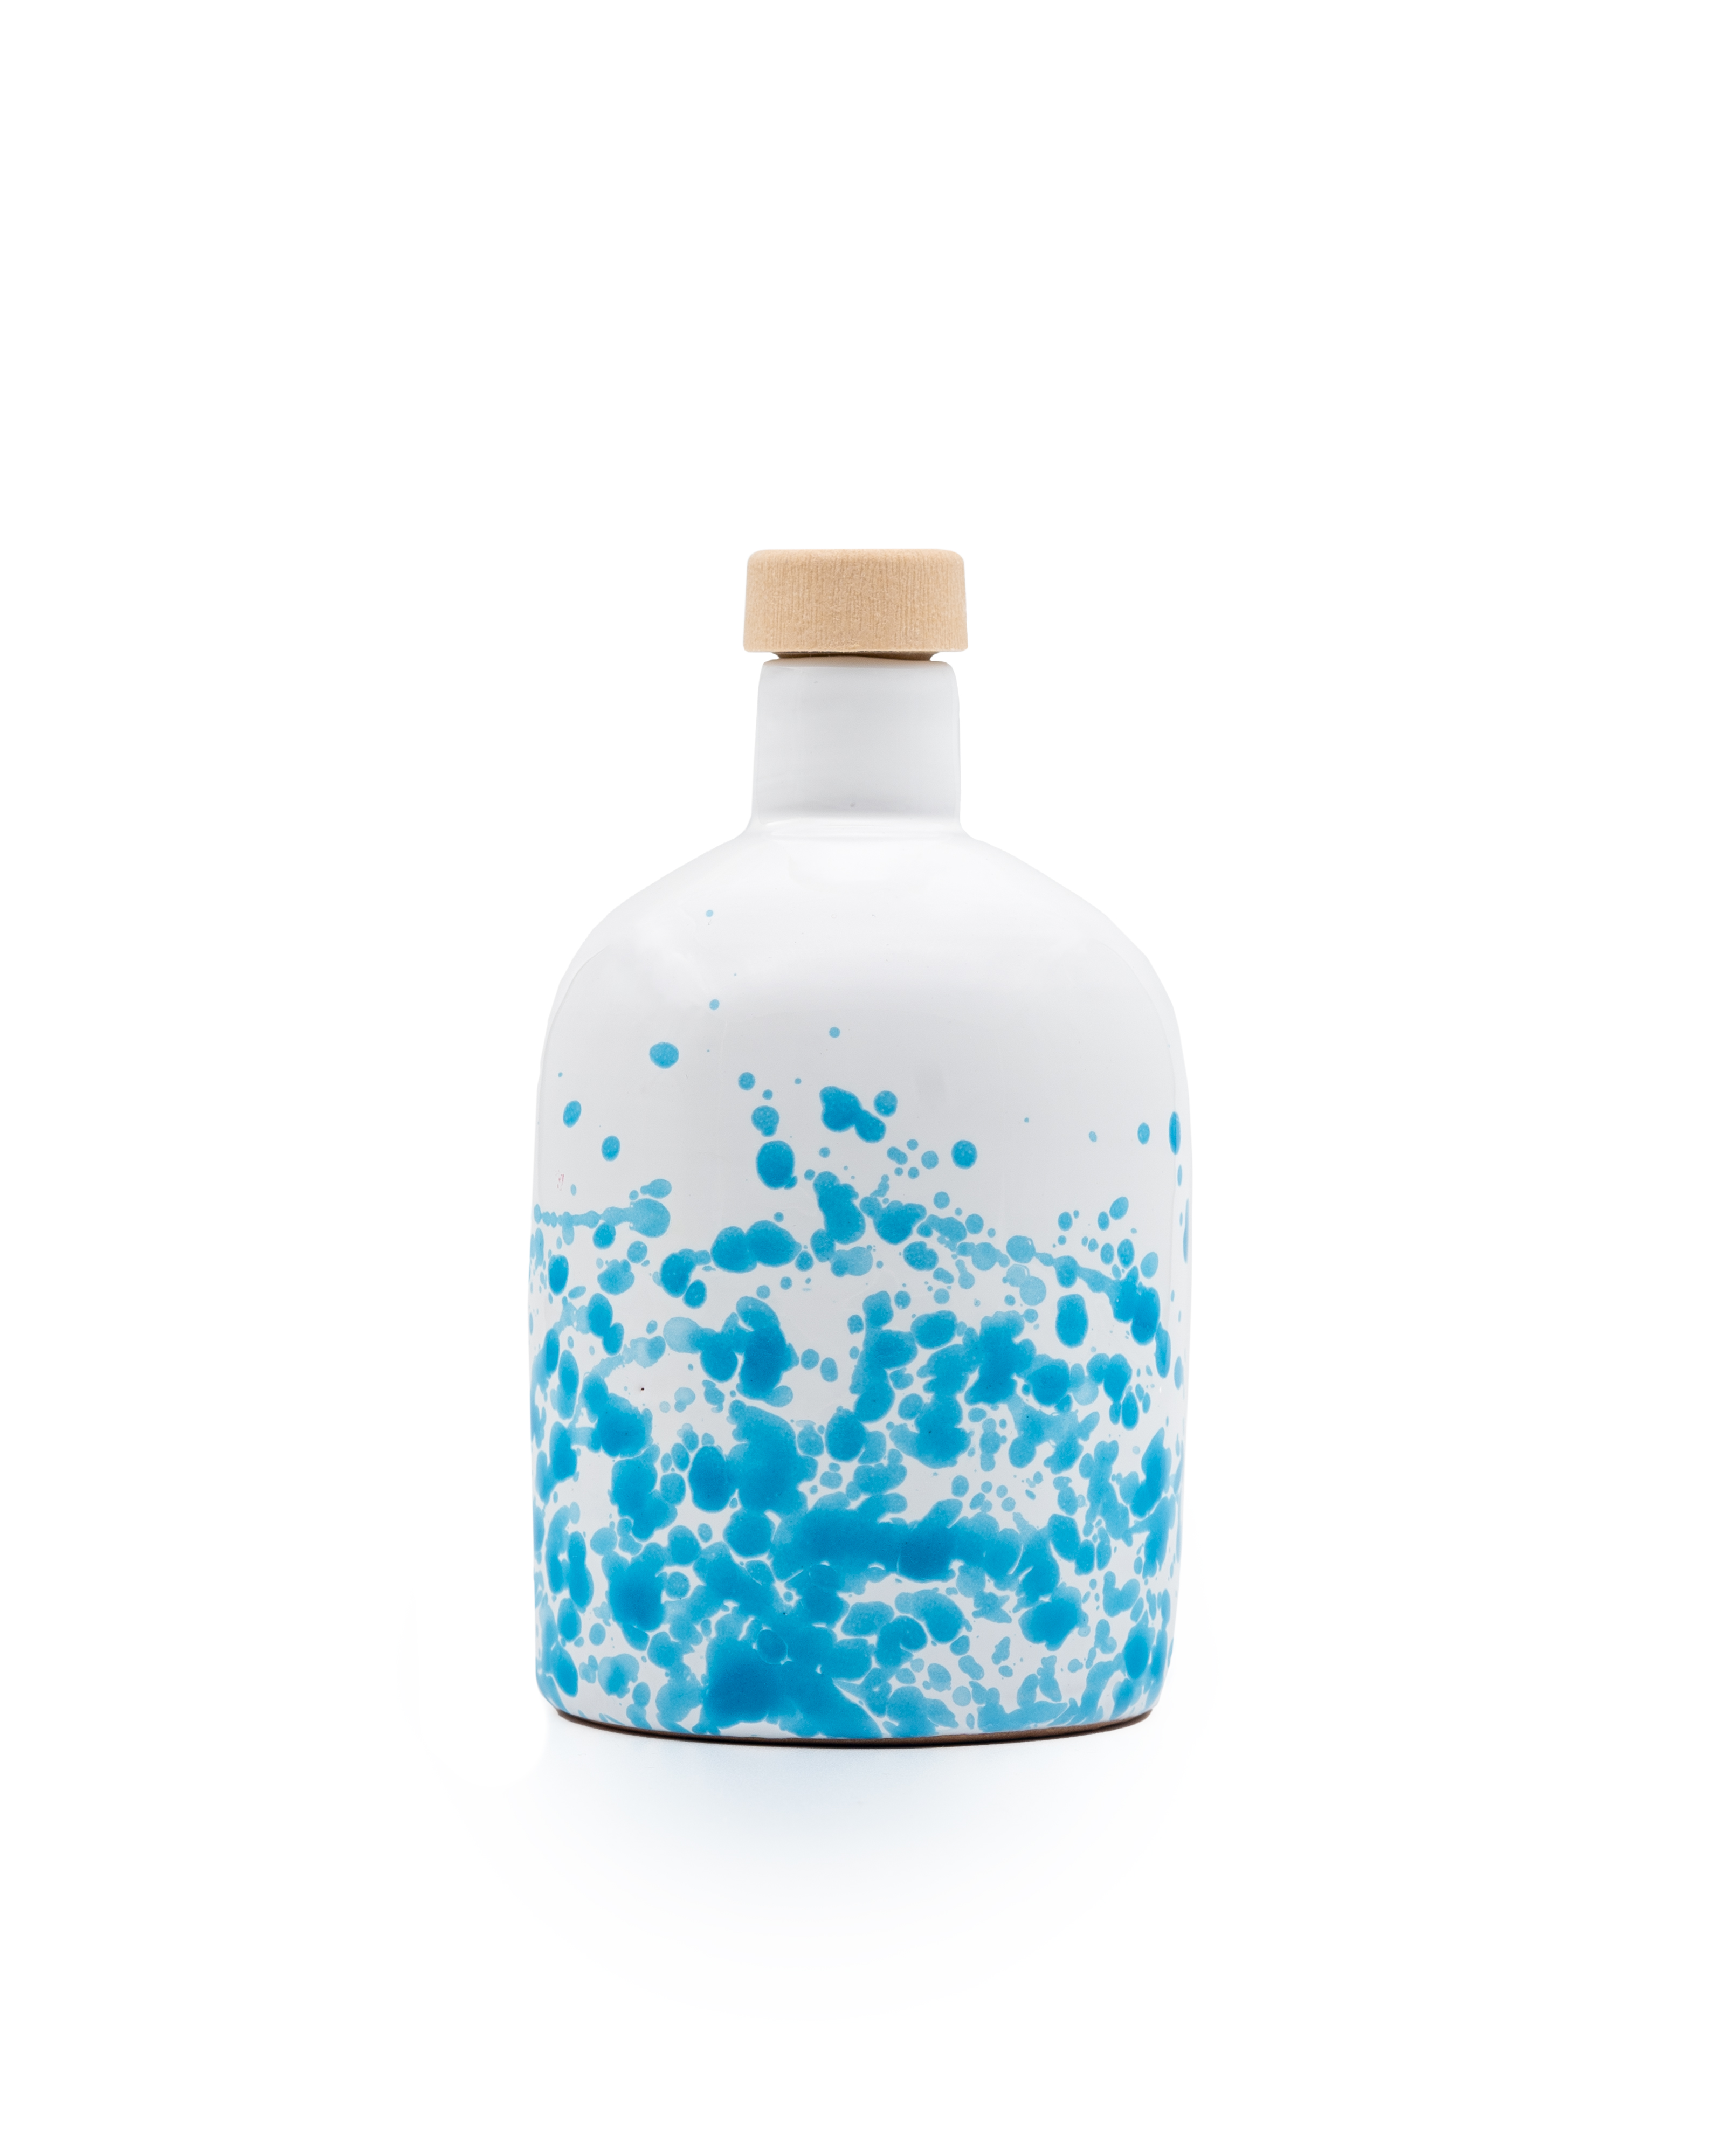 ALLEGRO olio extra vergine di oliva biologico nativo, filtrato, bottiglia di ceramica blu da 250 ml.